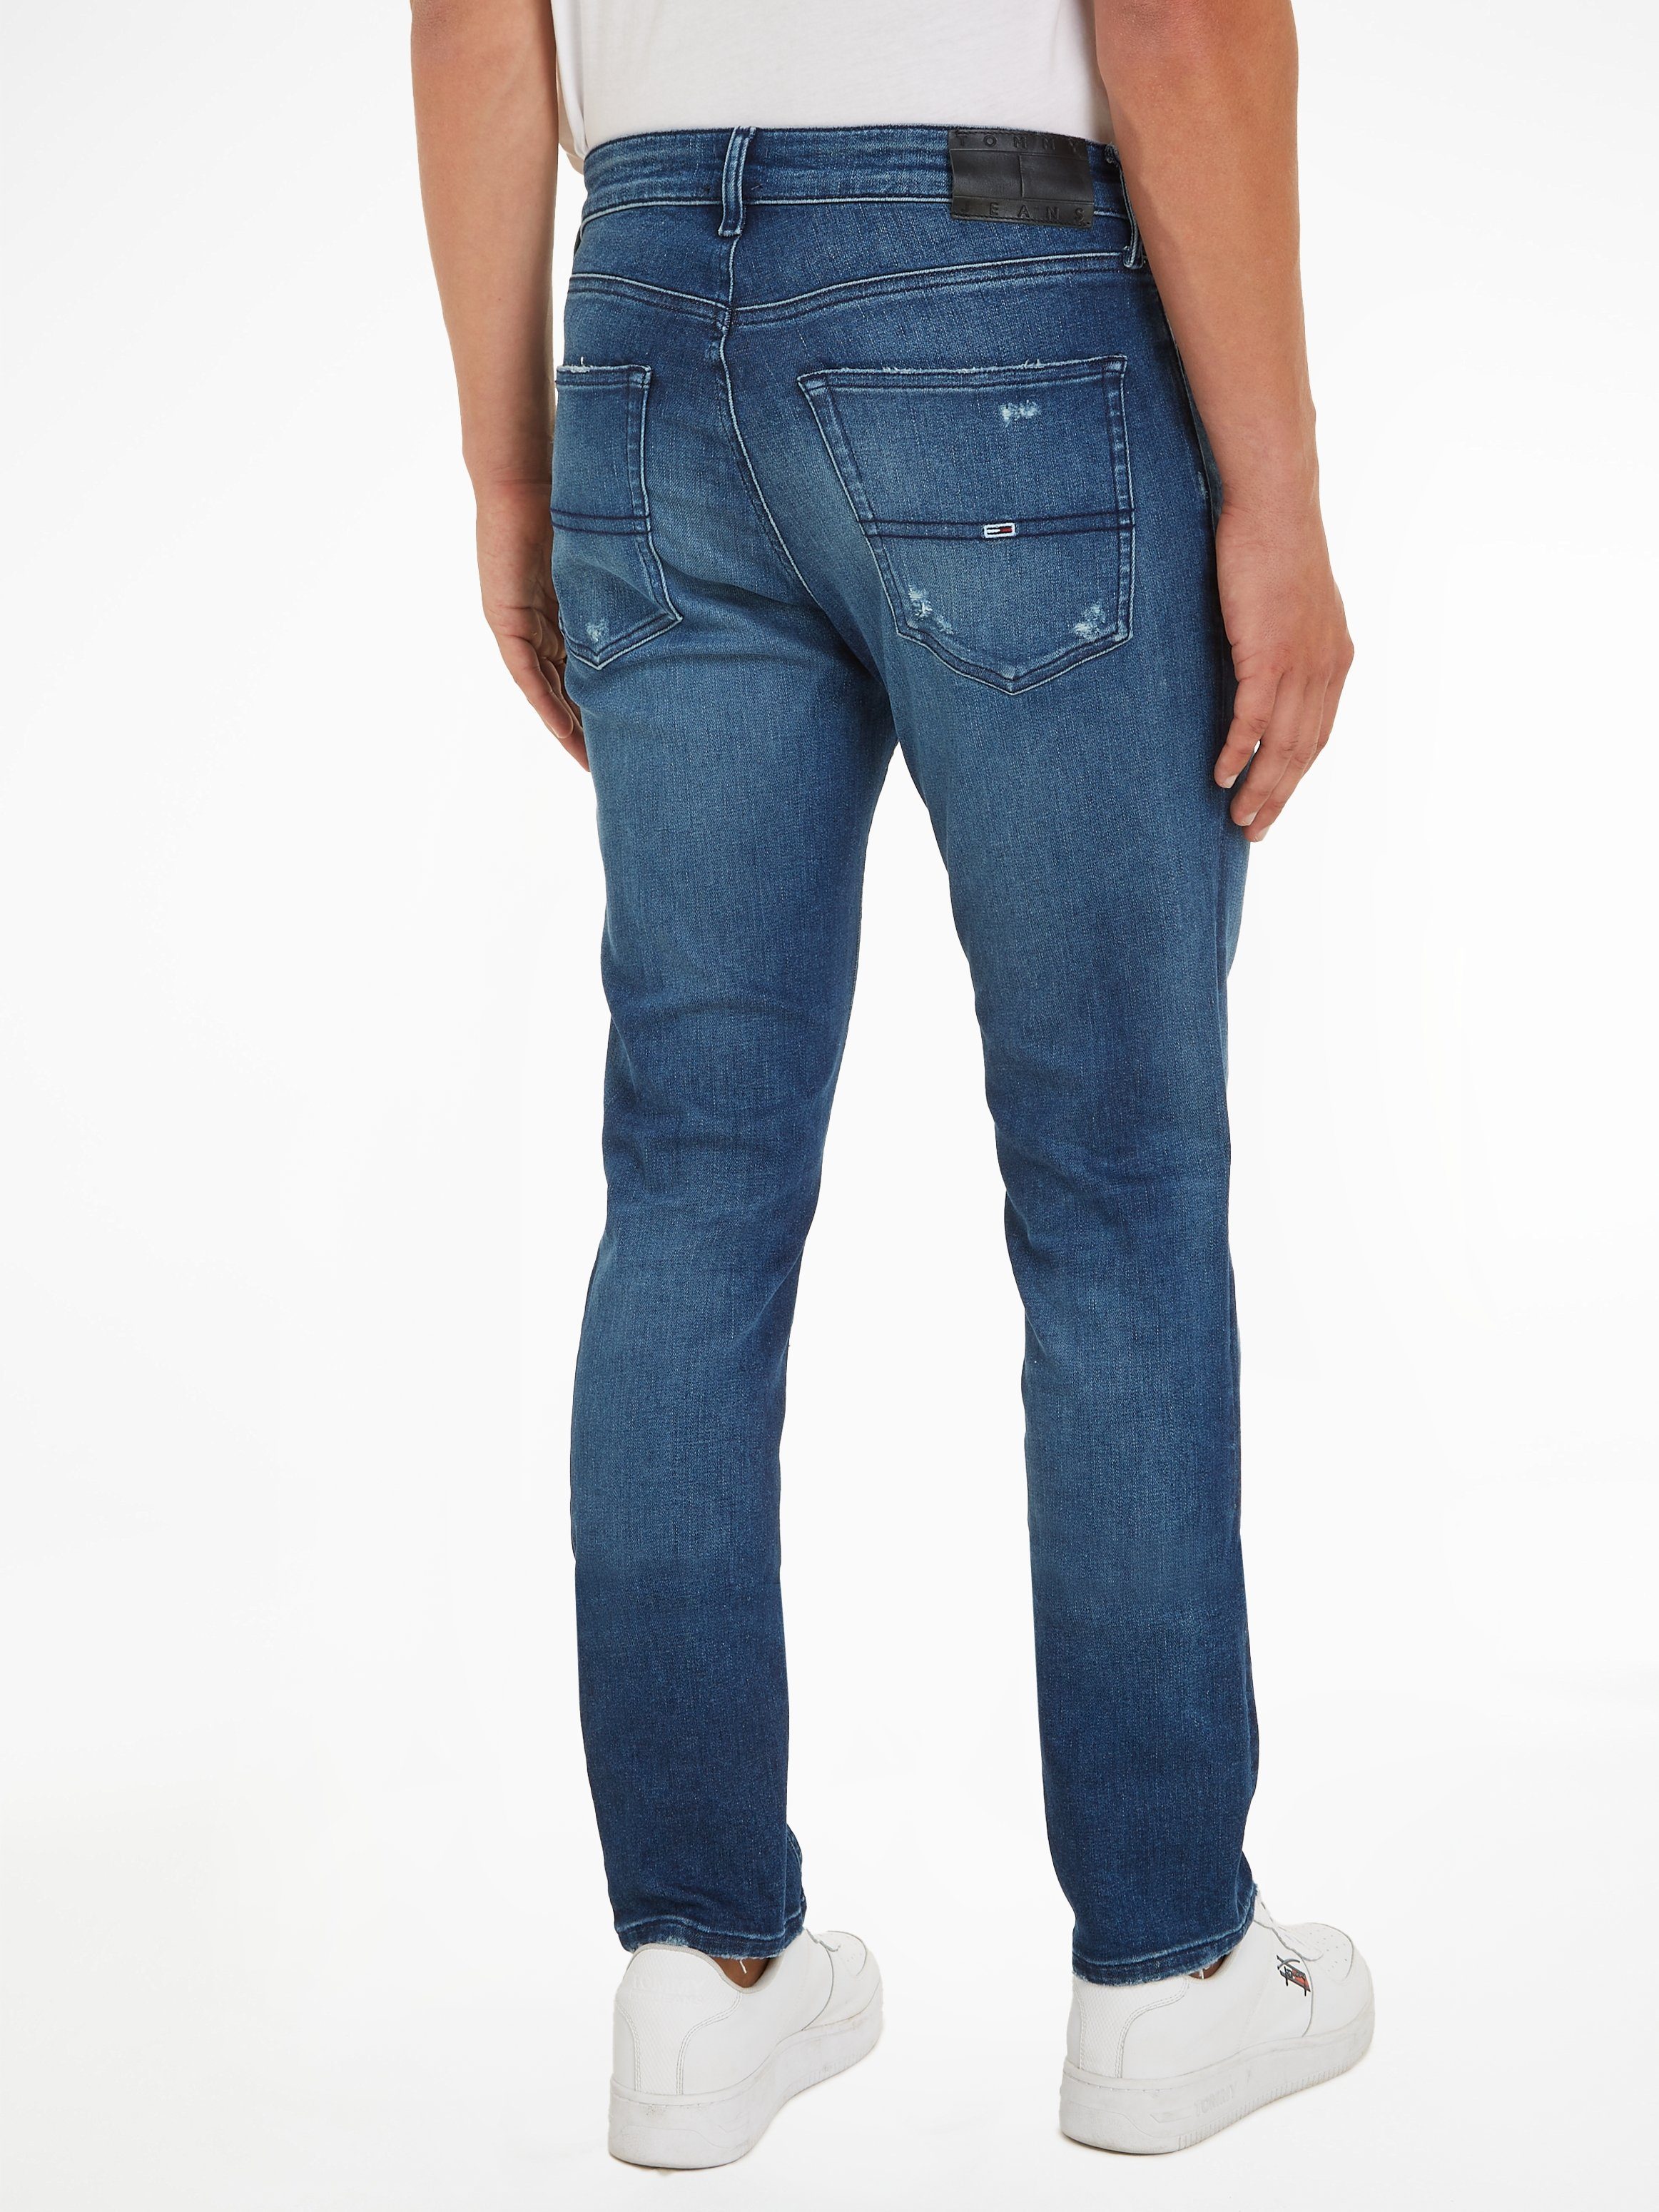 Tommy Jeans Slim-fit-Jeans SCANTON SLIM mit Abrieb- und Destroyeddetails